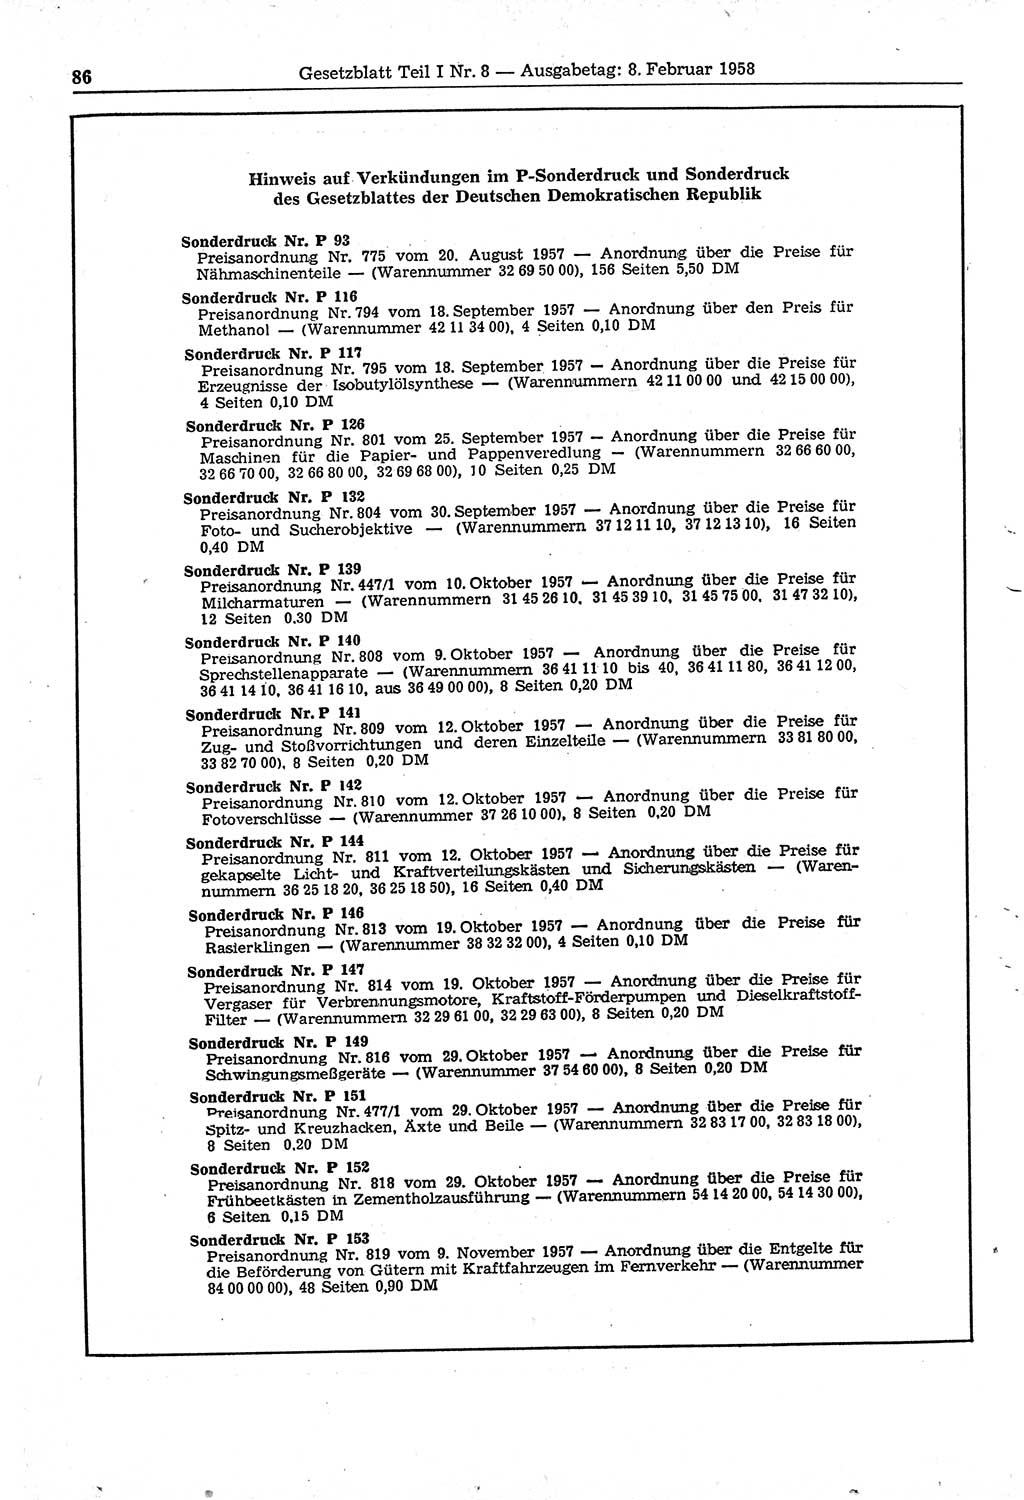 Gesetzblatt (GBl.) der Deutschen Demokratischen Republik (DDR) Teil Ⅰ 1958, Seite 86 (GBl. DDR Ⅰ 1958, S. 86)